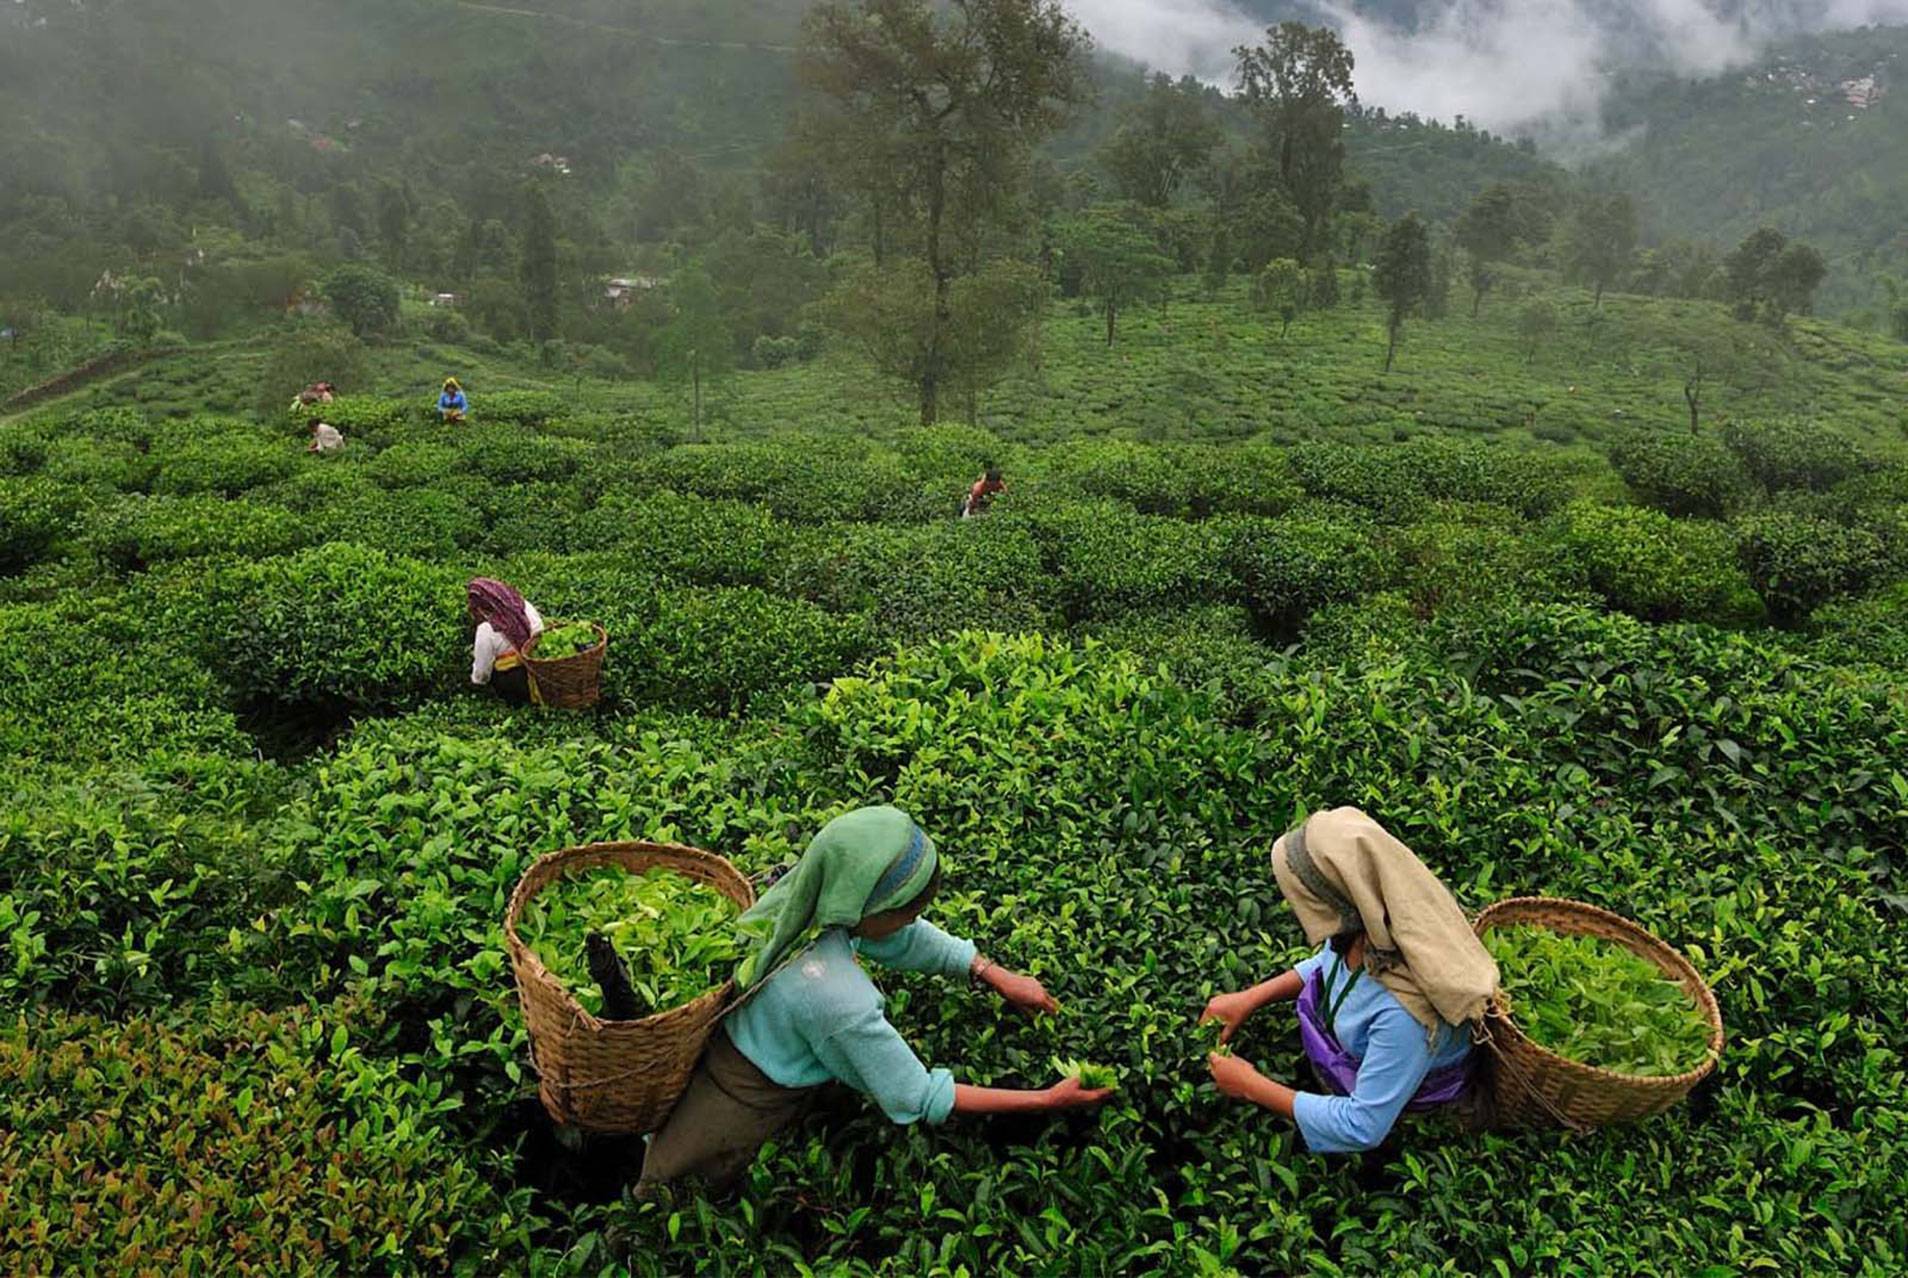 Индийский чай – виды и описание, где выращивают, как заварить и как выбрать